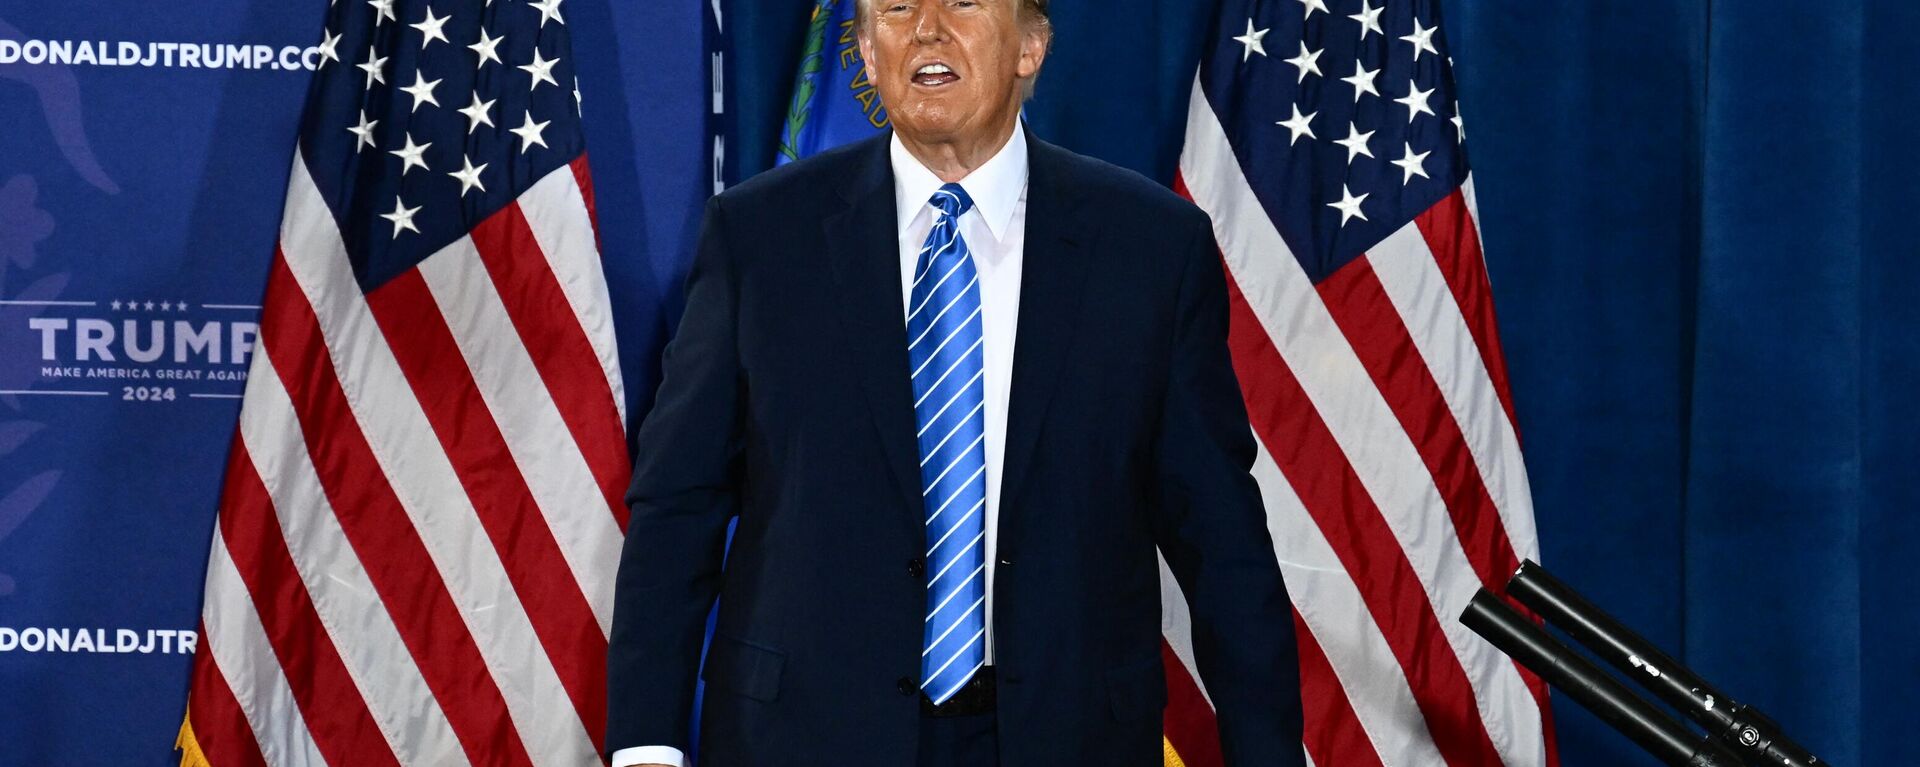 Donald Trump, ex-presidente dos EUA (2017-2021) e candidato à presidência em 2024, sobe ao palco após discursar em um comício em Las Vegas, Nevada, EUA, 27 de janeiro de 2024 - Sputnik Brasil, 1920, 28.01.2024